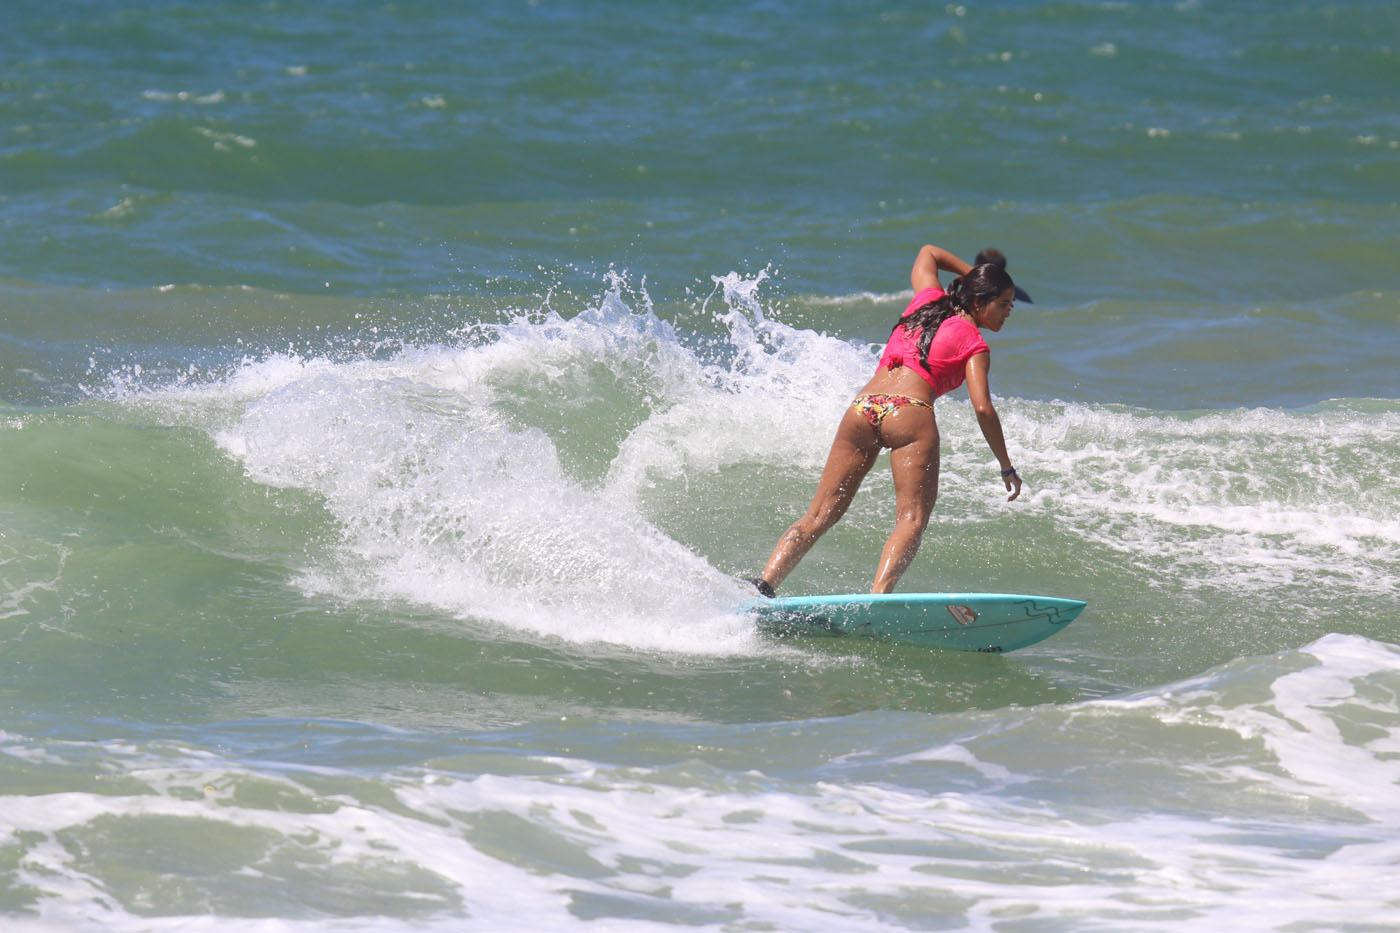 Marina Werneck  Cenário do surf feminino melhor para todas